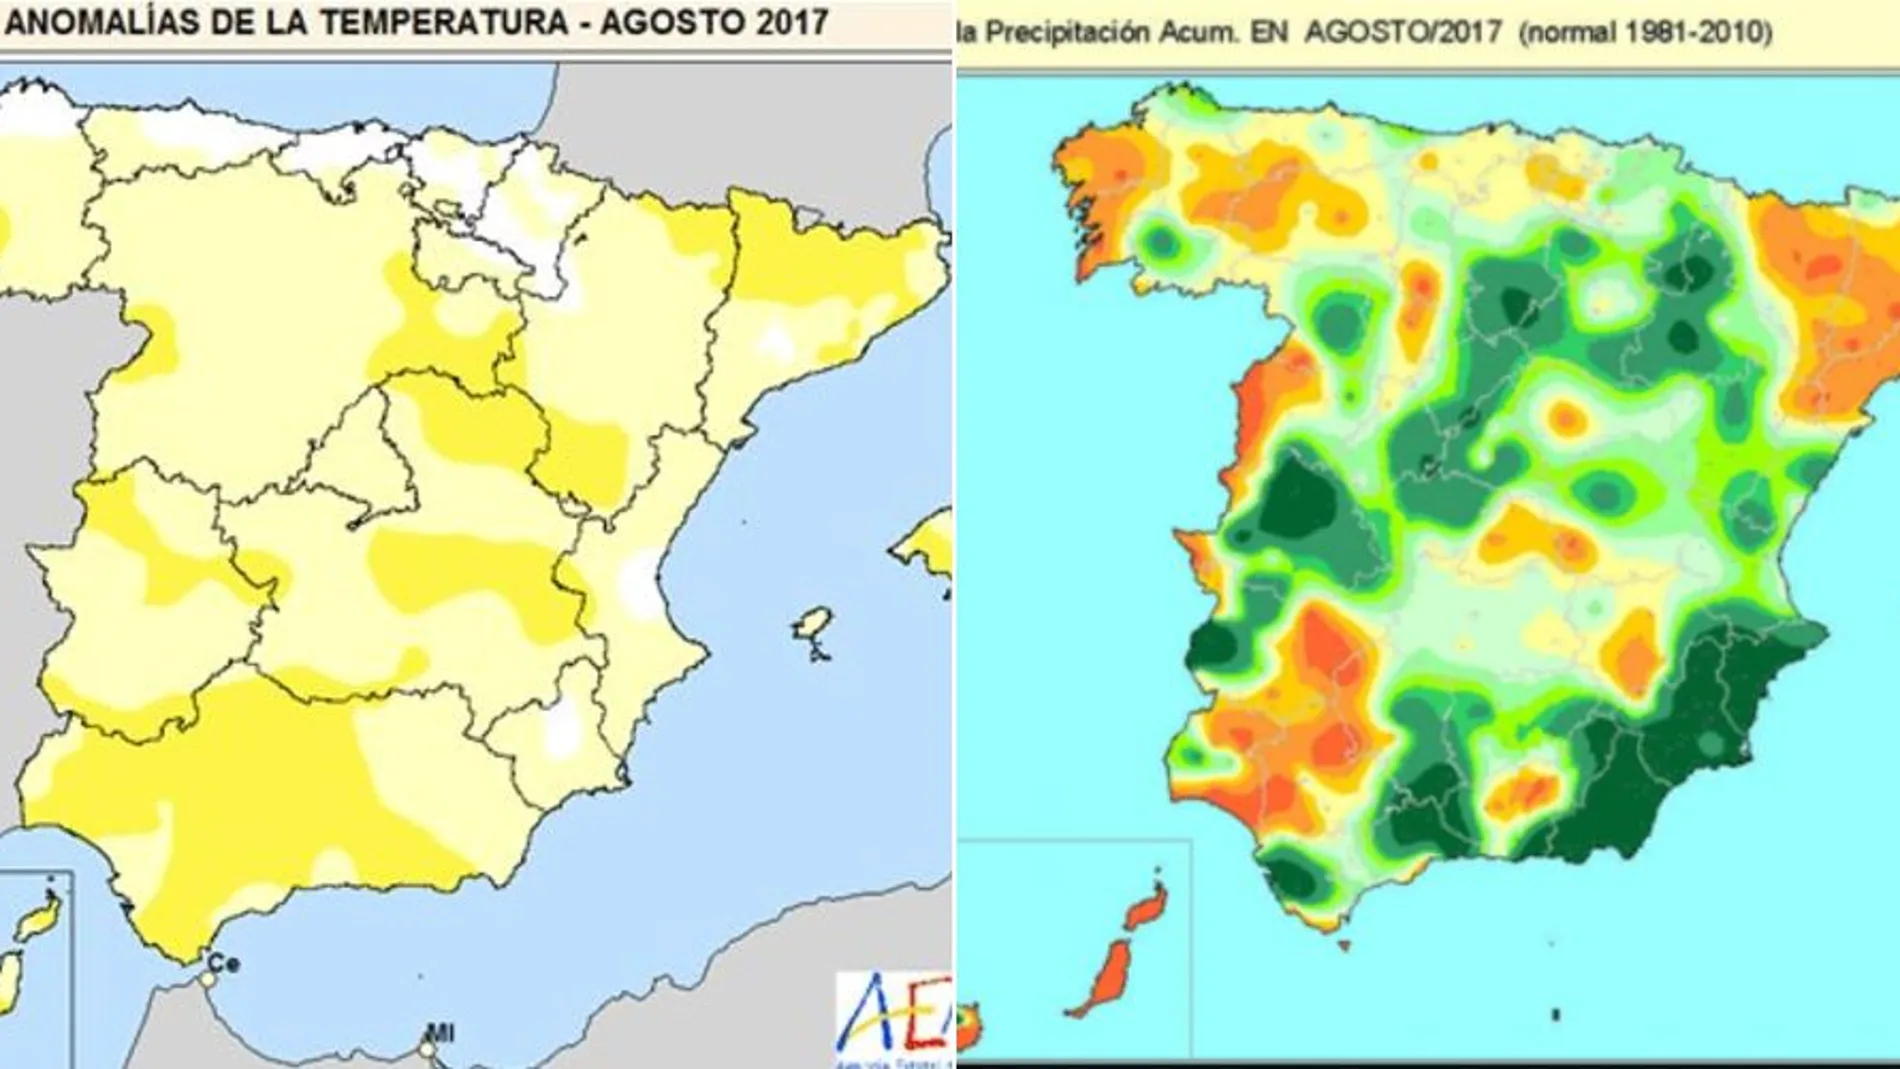 Anomalías de temperatura y precipitaciones acumuladas en agosto